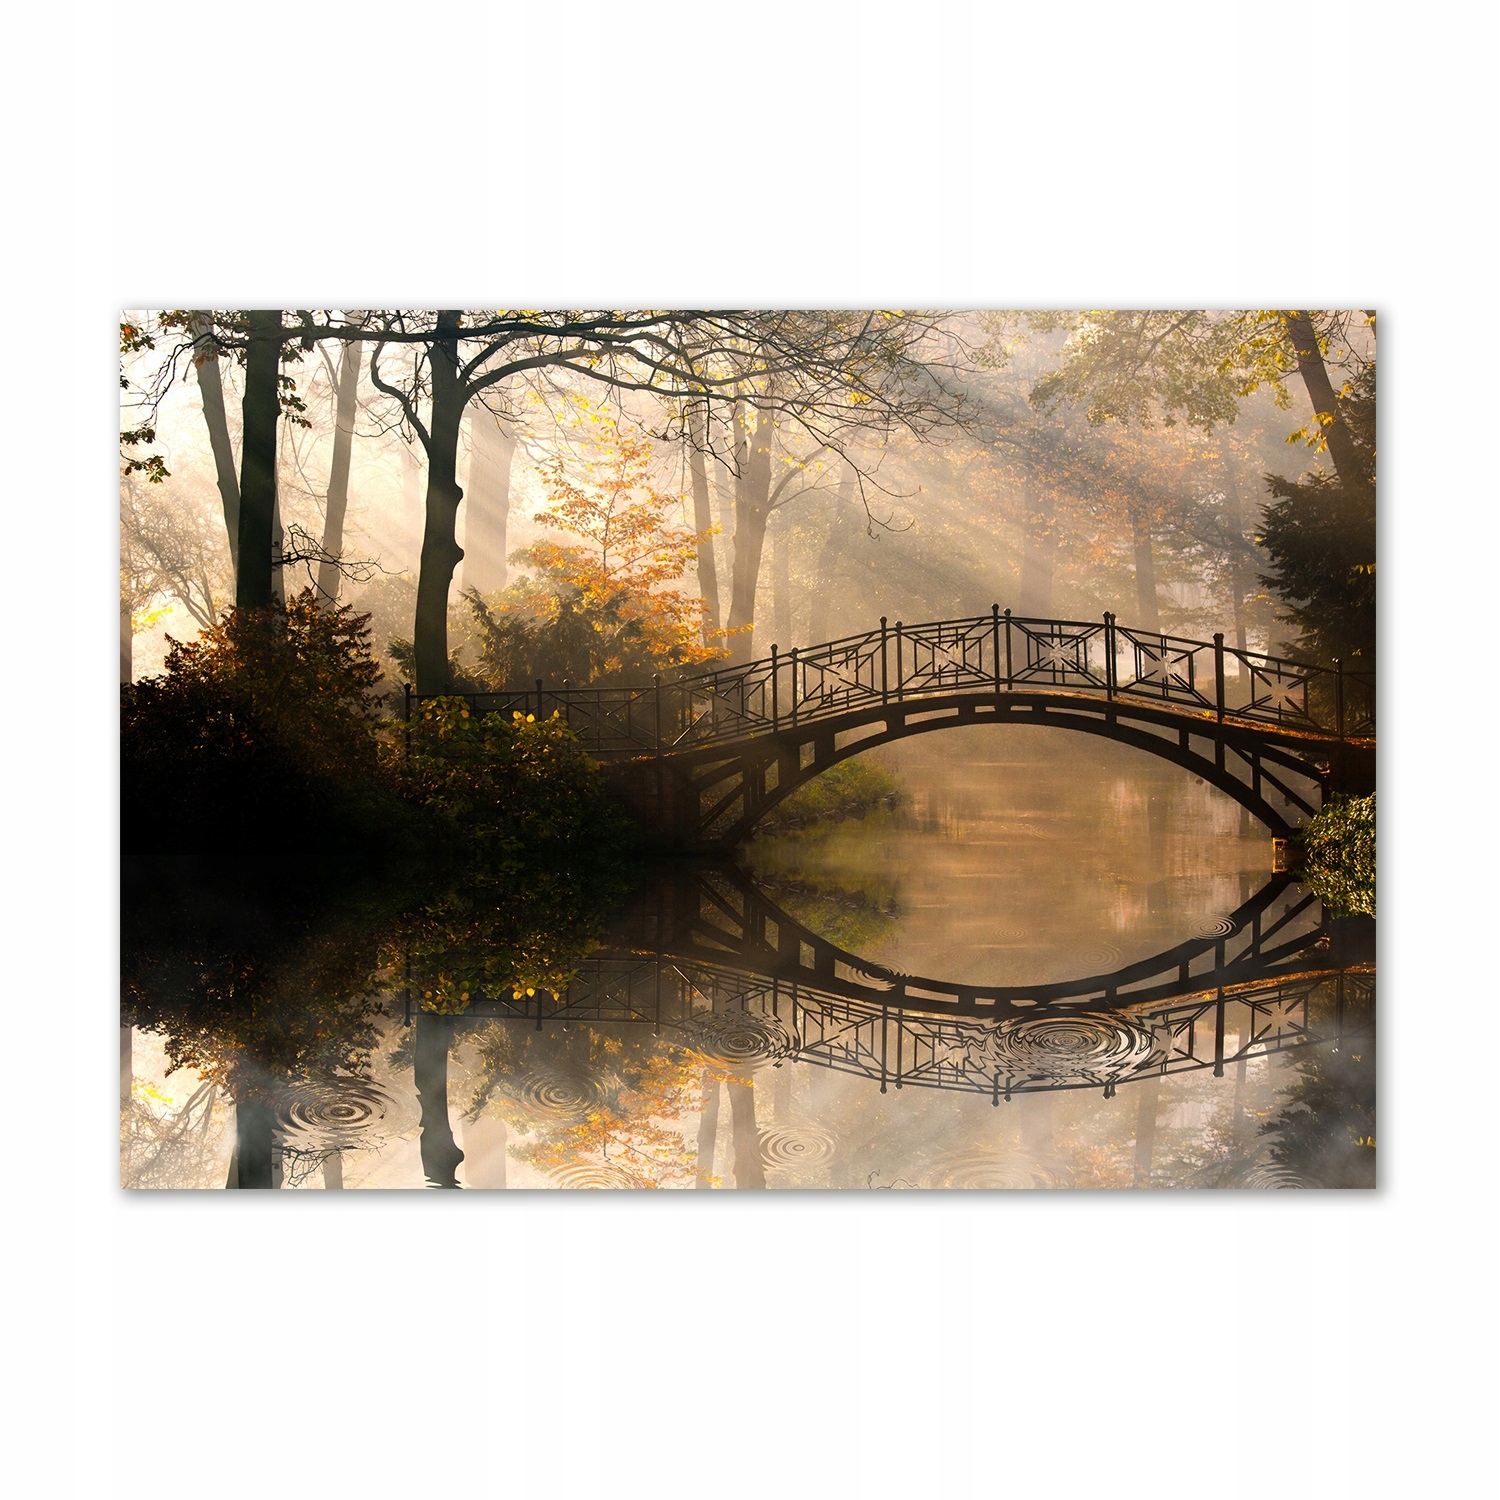 

Foto obraz akrylowy Stary most jesienią 100x70 cm